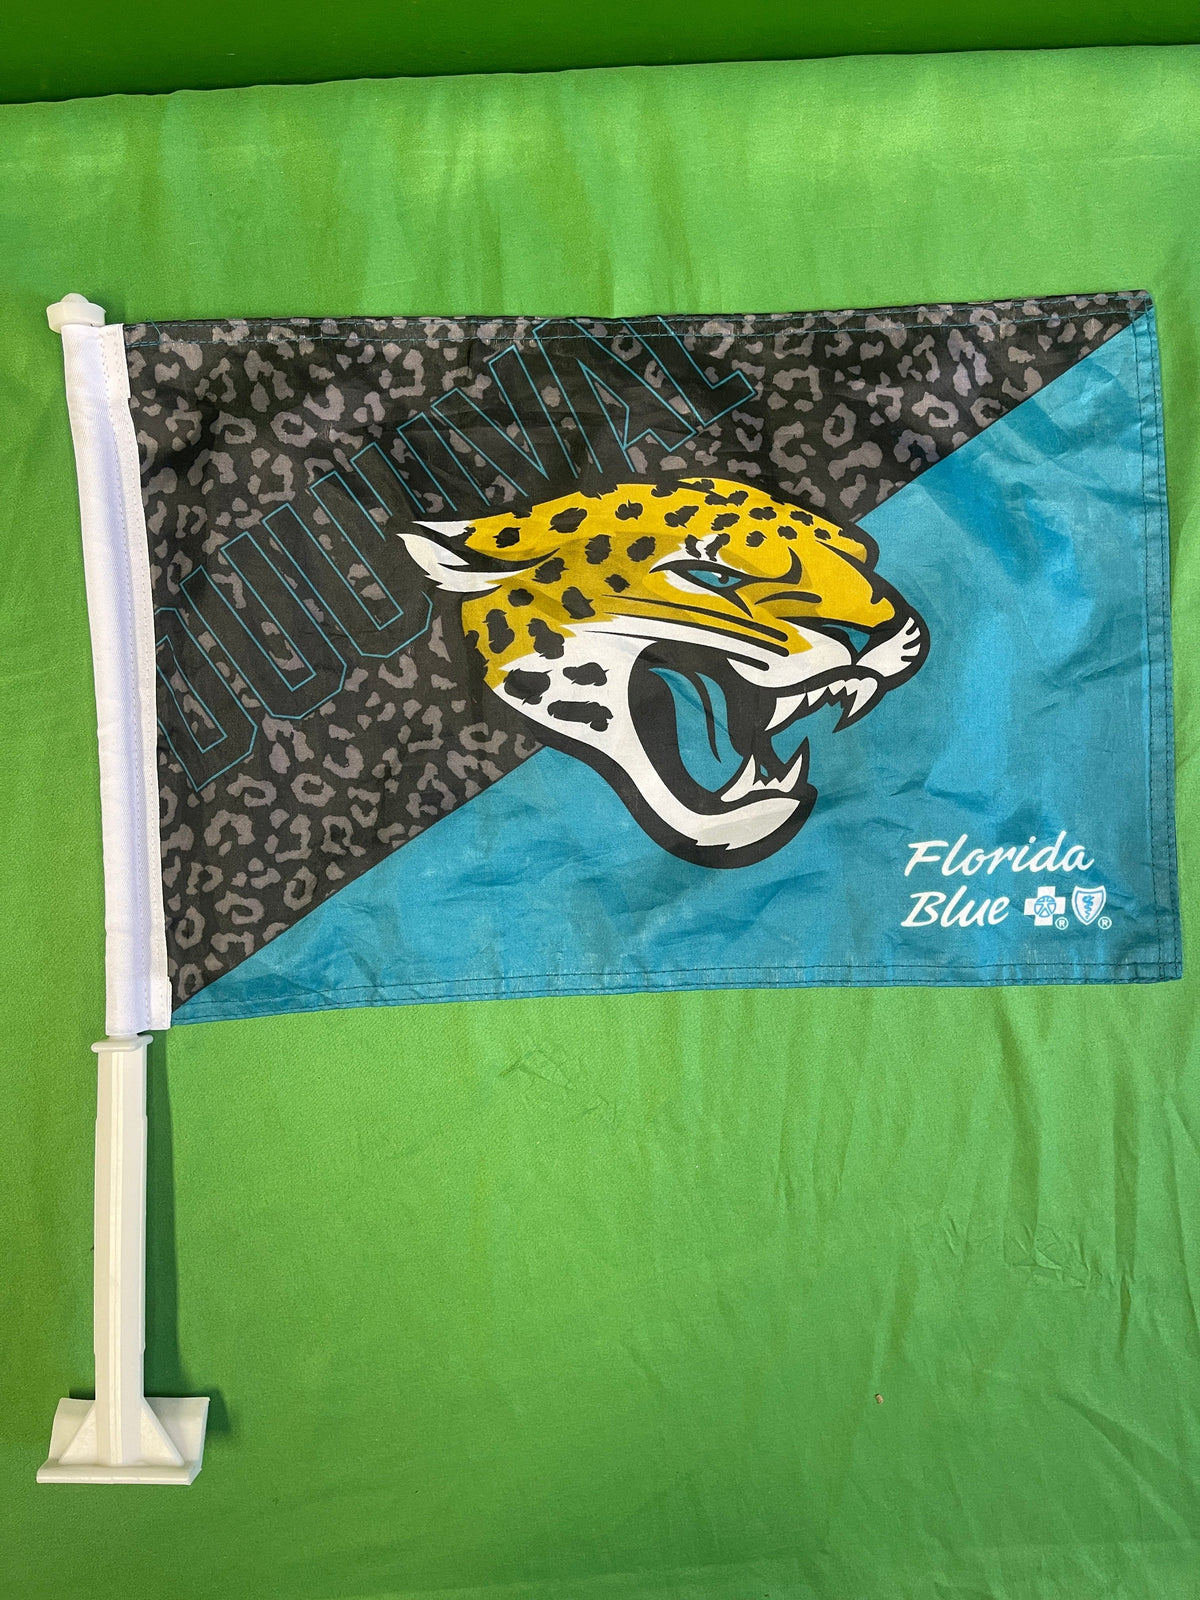 NFL Jacksonville Jaguars Double-Sided Car Flag New/Unused